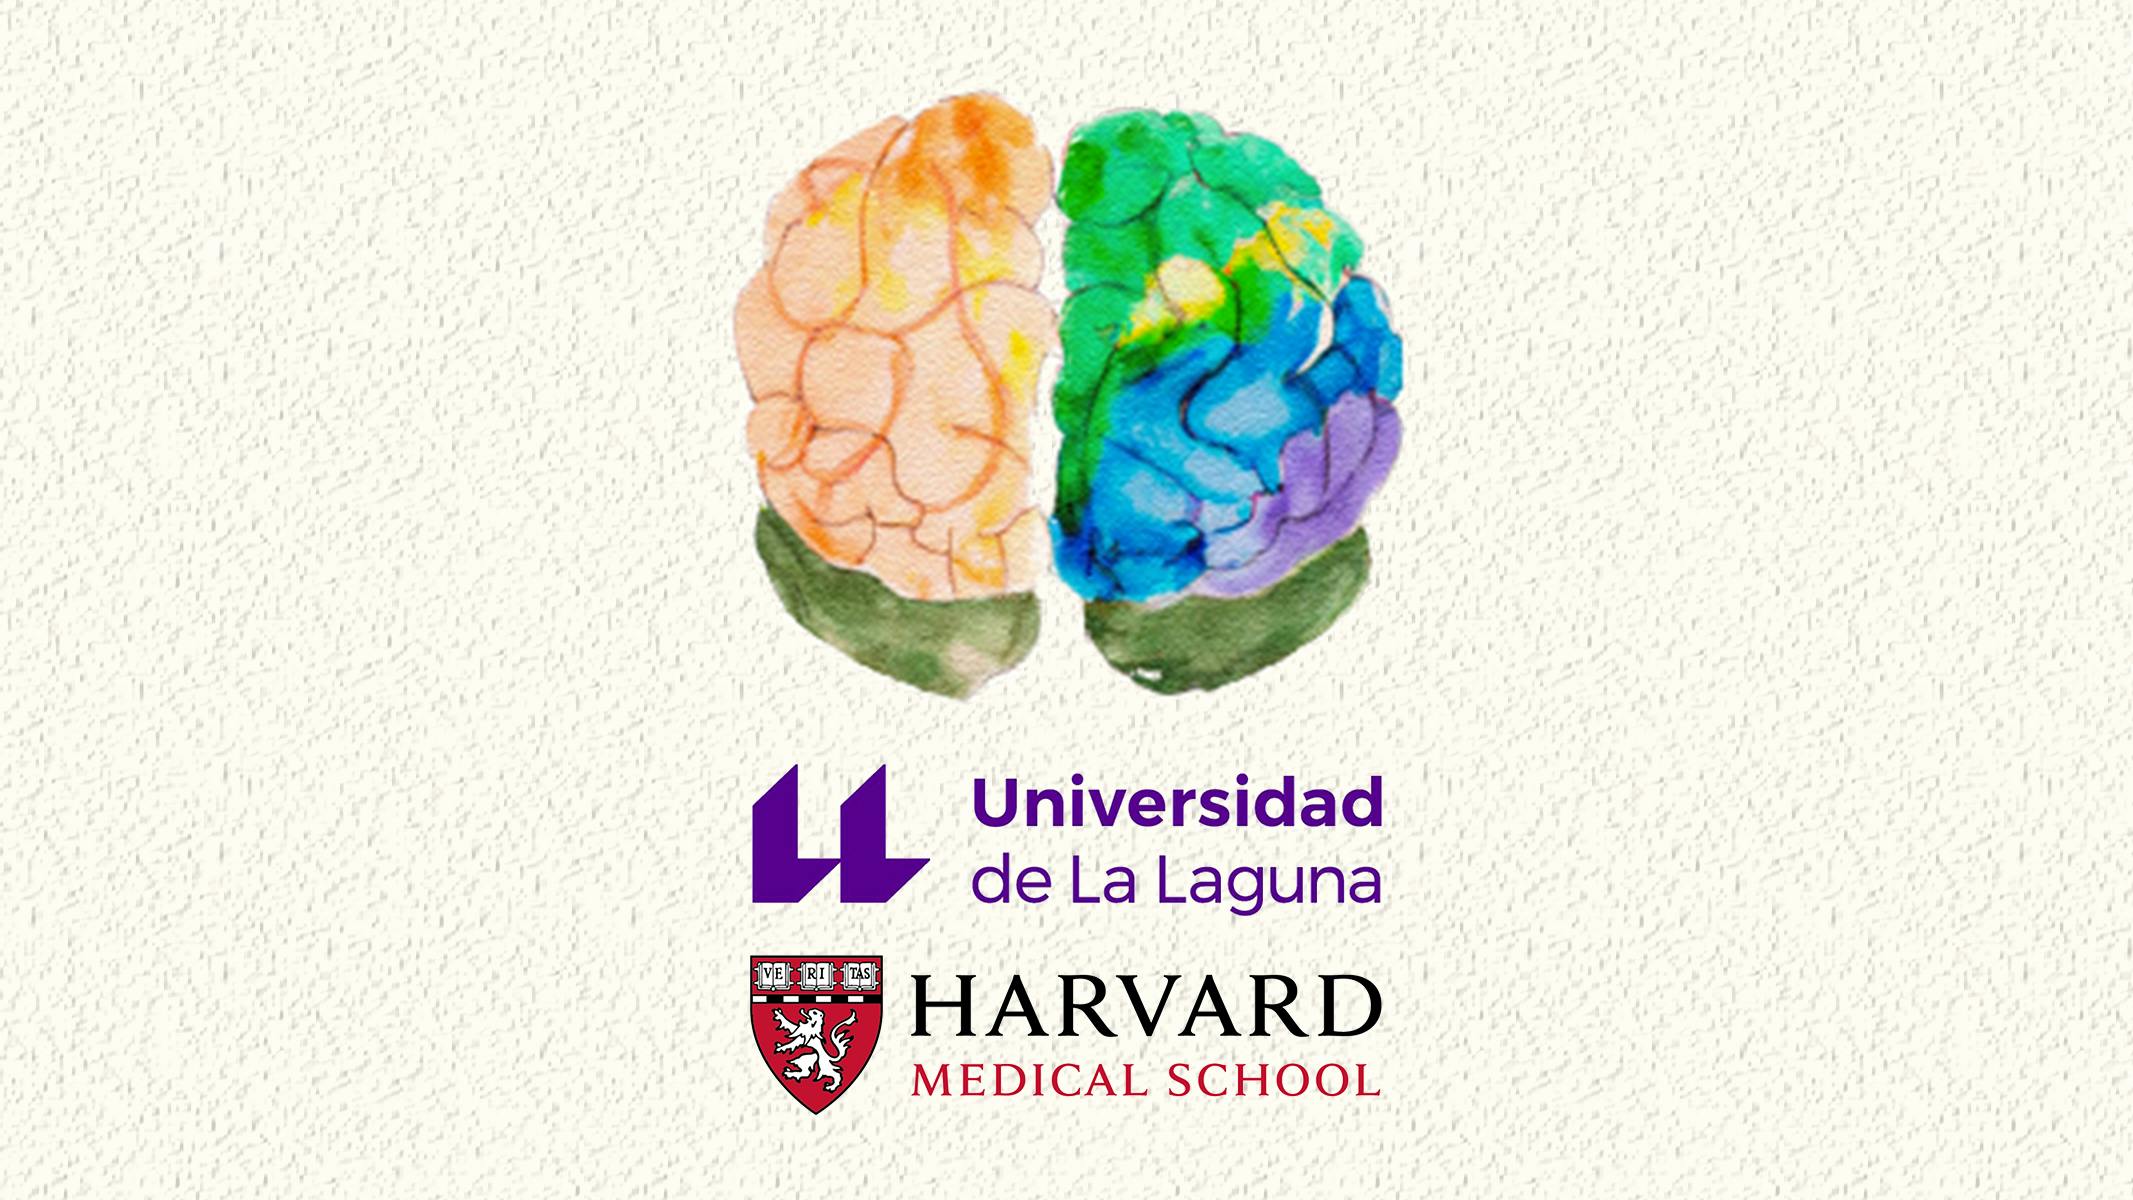 Rappresentazione artistica di un cervello colorato al di sotto del quale sono posizionati il logo dell'Universidad de La Lagura e quello dell'Harvard Medical School.